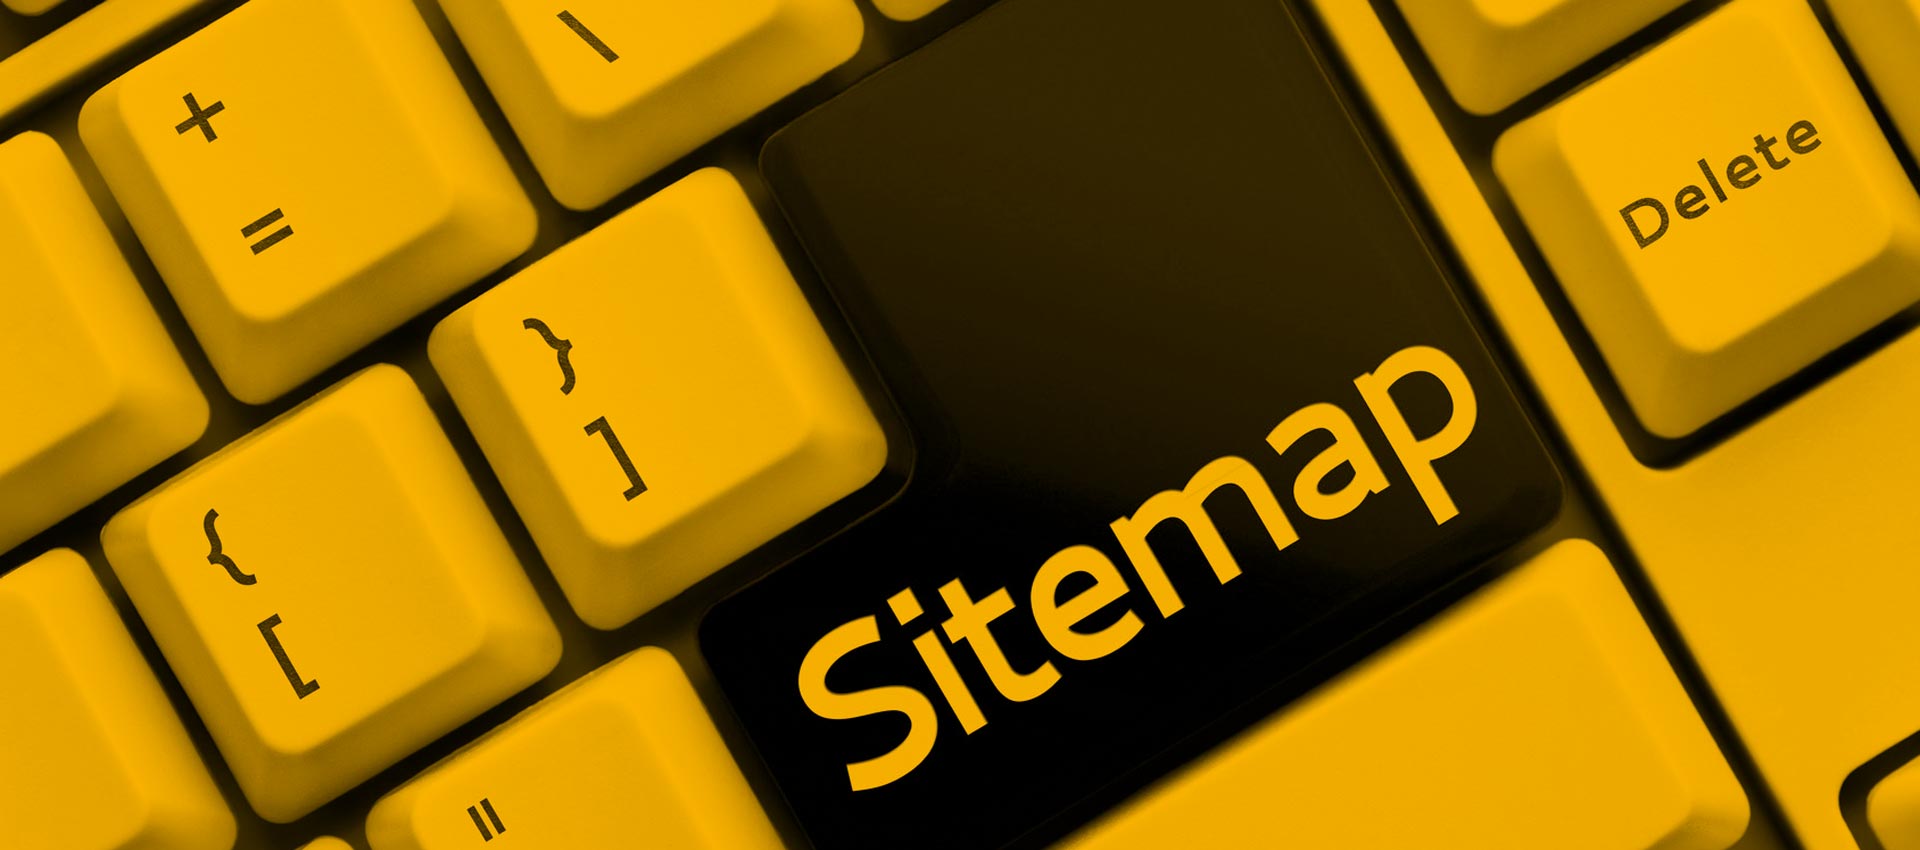 Sitemap - Websitestructure